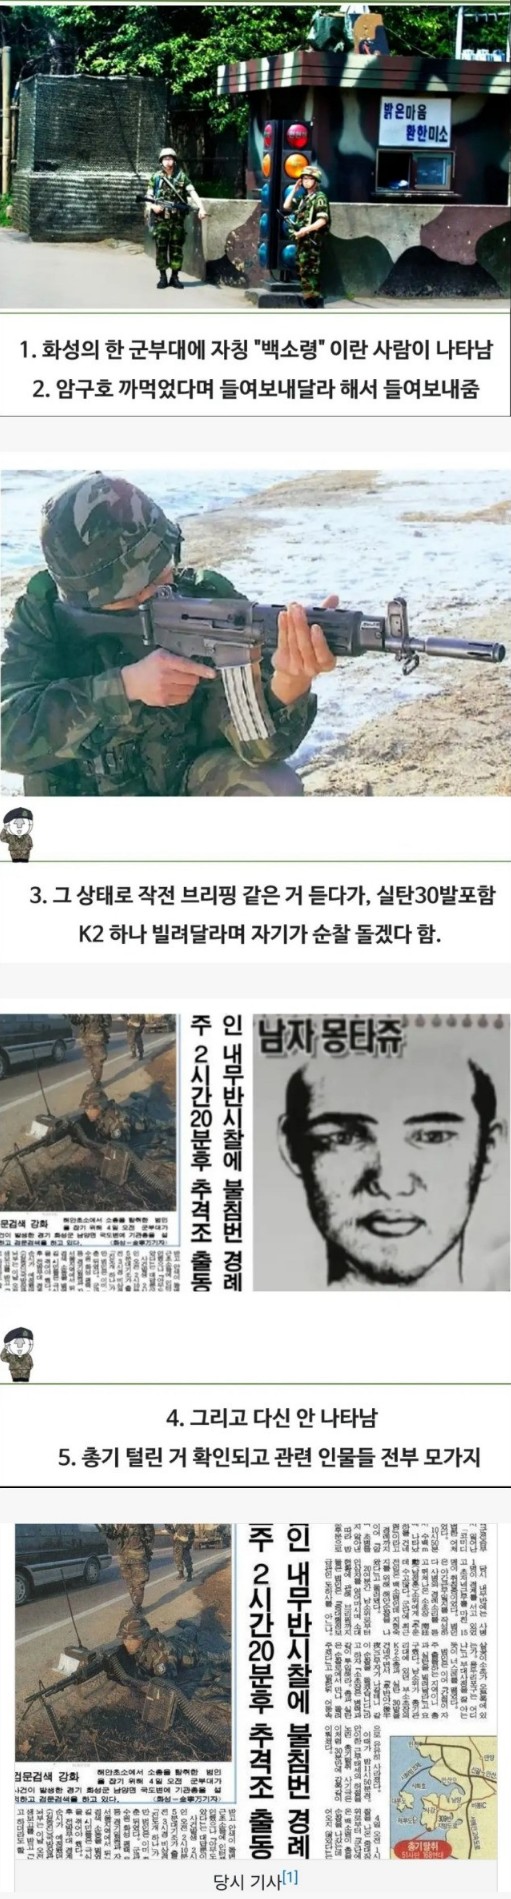 한국군 레전드 총기 사고